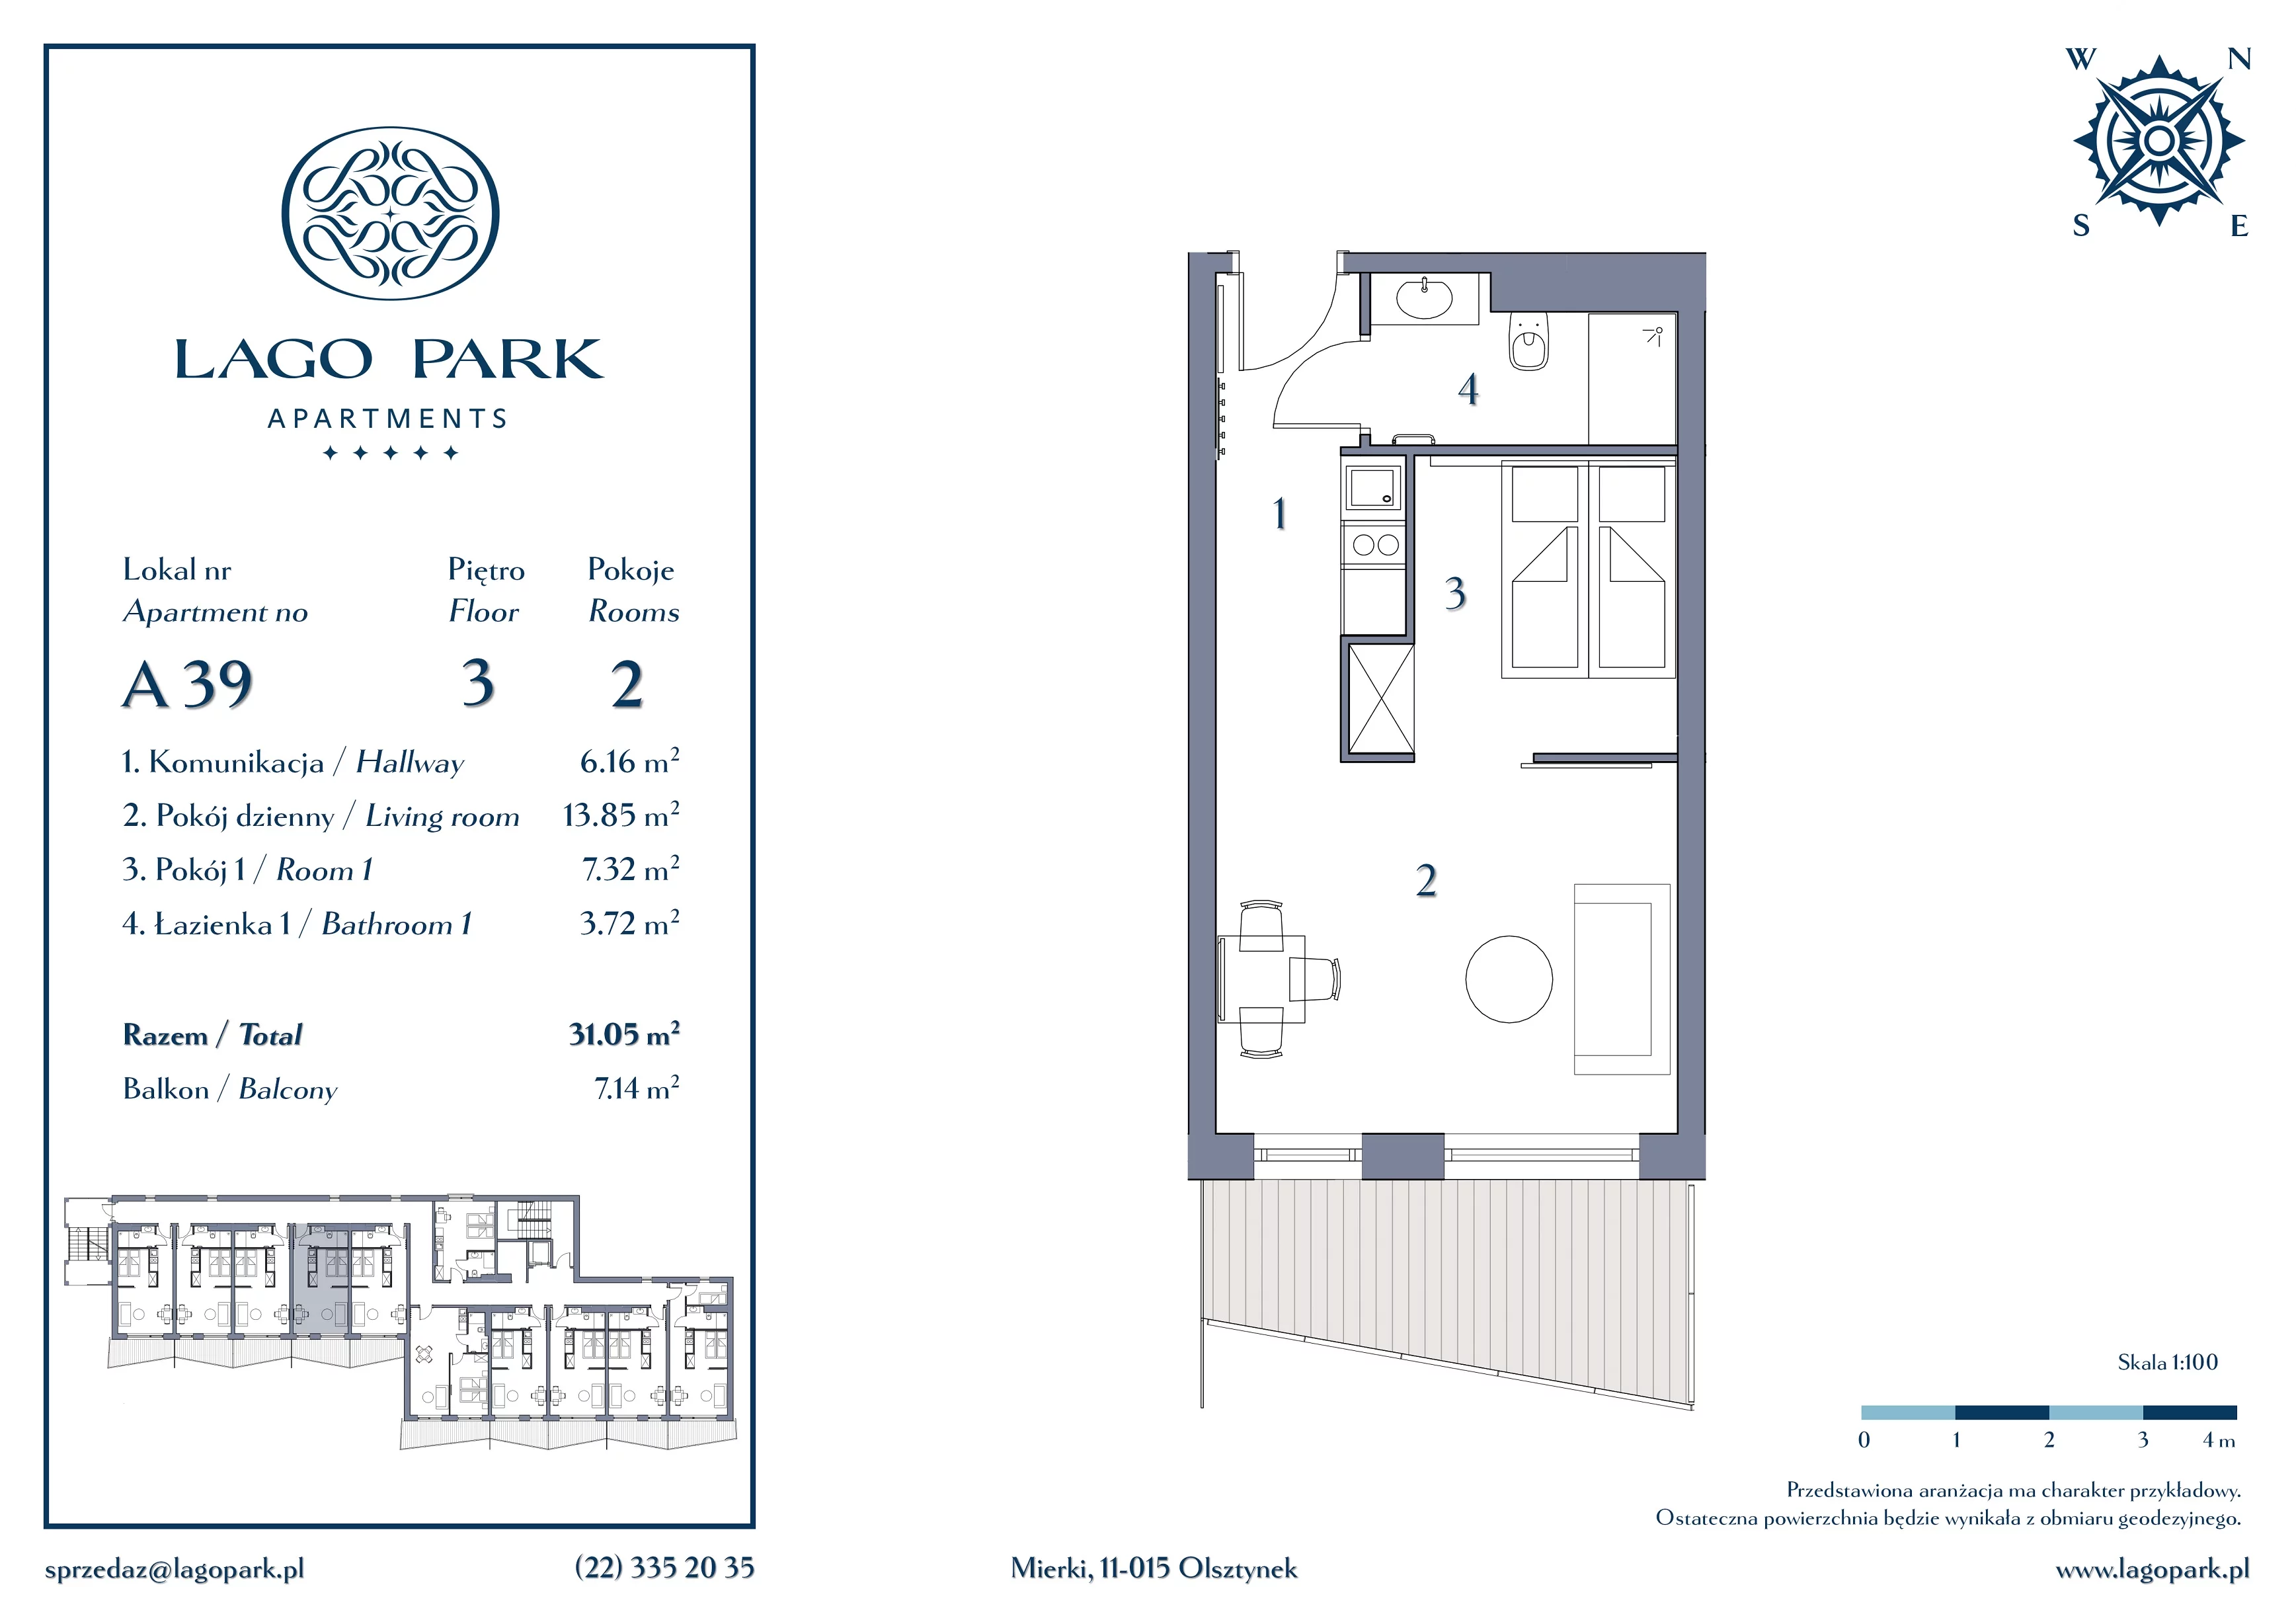 Apartament inwestycyjny 31,05 m², piętro 3, oferta nr A39, Lago Park Apartments by Aries, Mierki, Kołatek 2